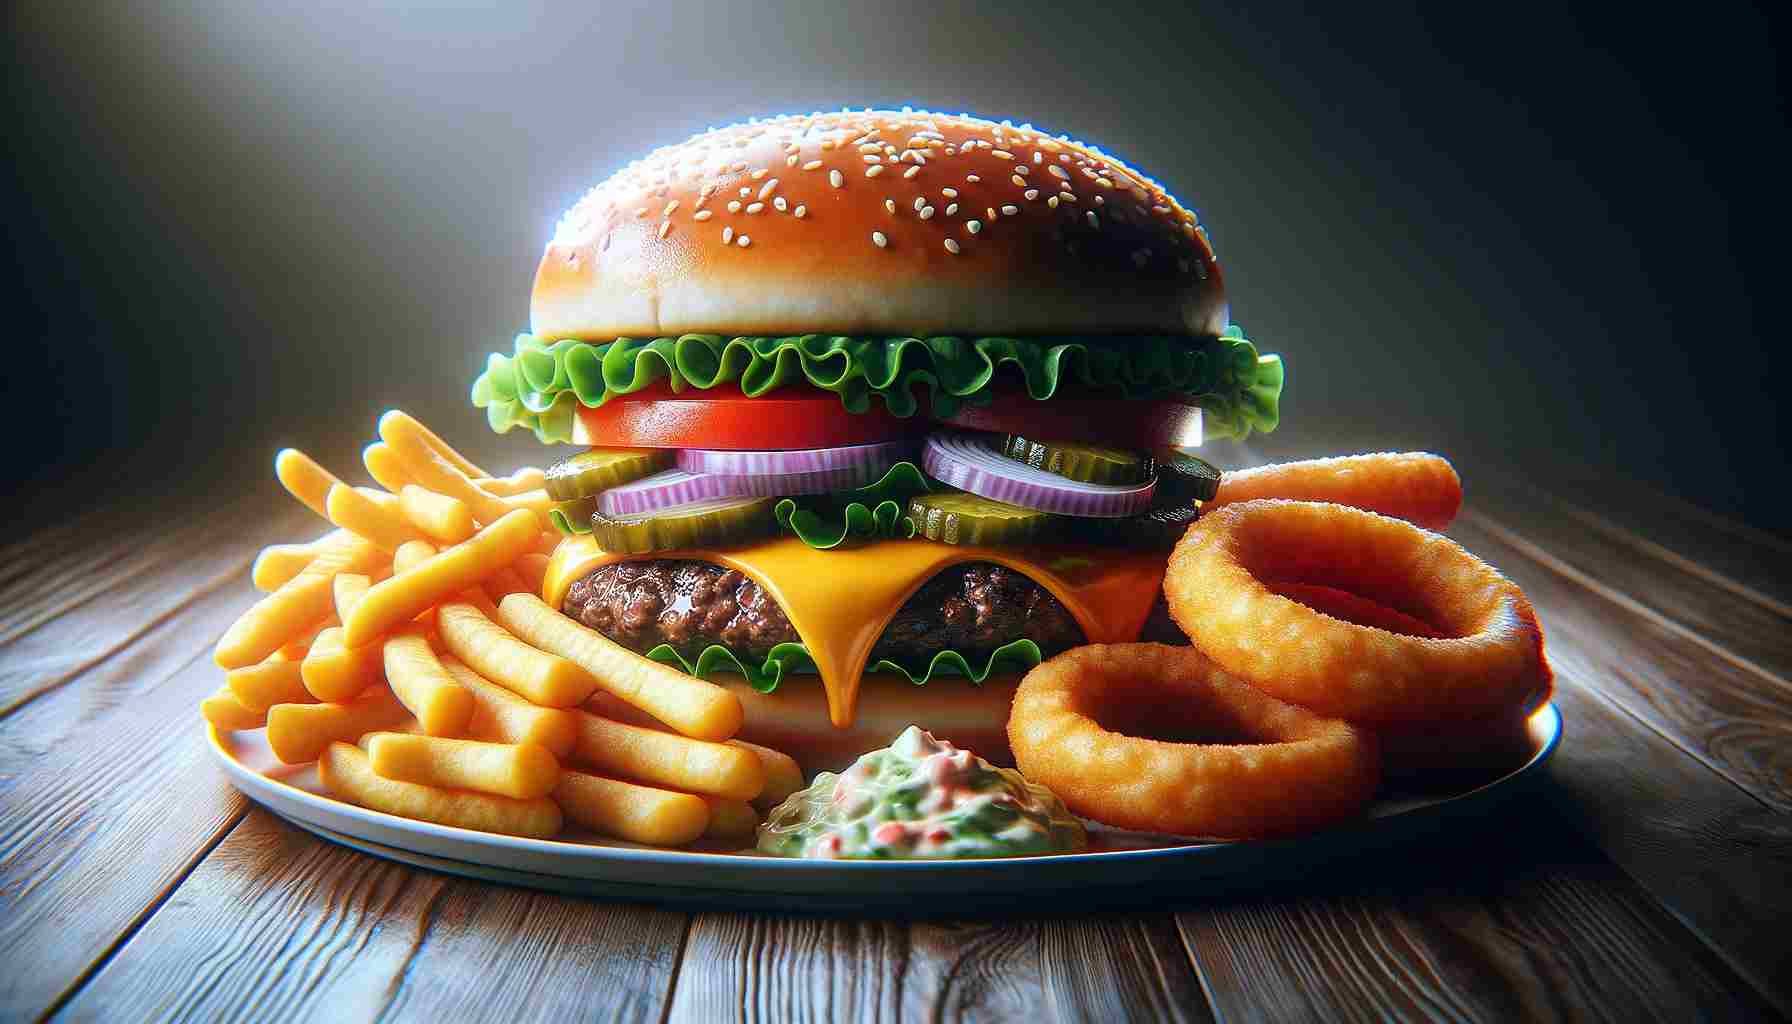 Hiperrealisztikus kép egy teli tányér gyorsétteremről. A tányér egy nagy, szaftos sajtburgert tartalmaz salátával, paradicsommal, hagymával és savanyúsággal, valamint egy köretet.